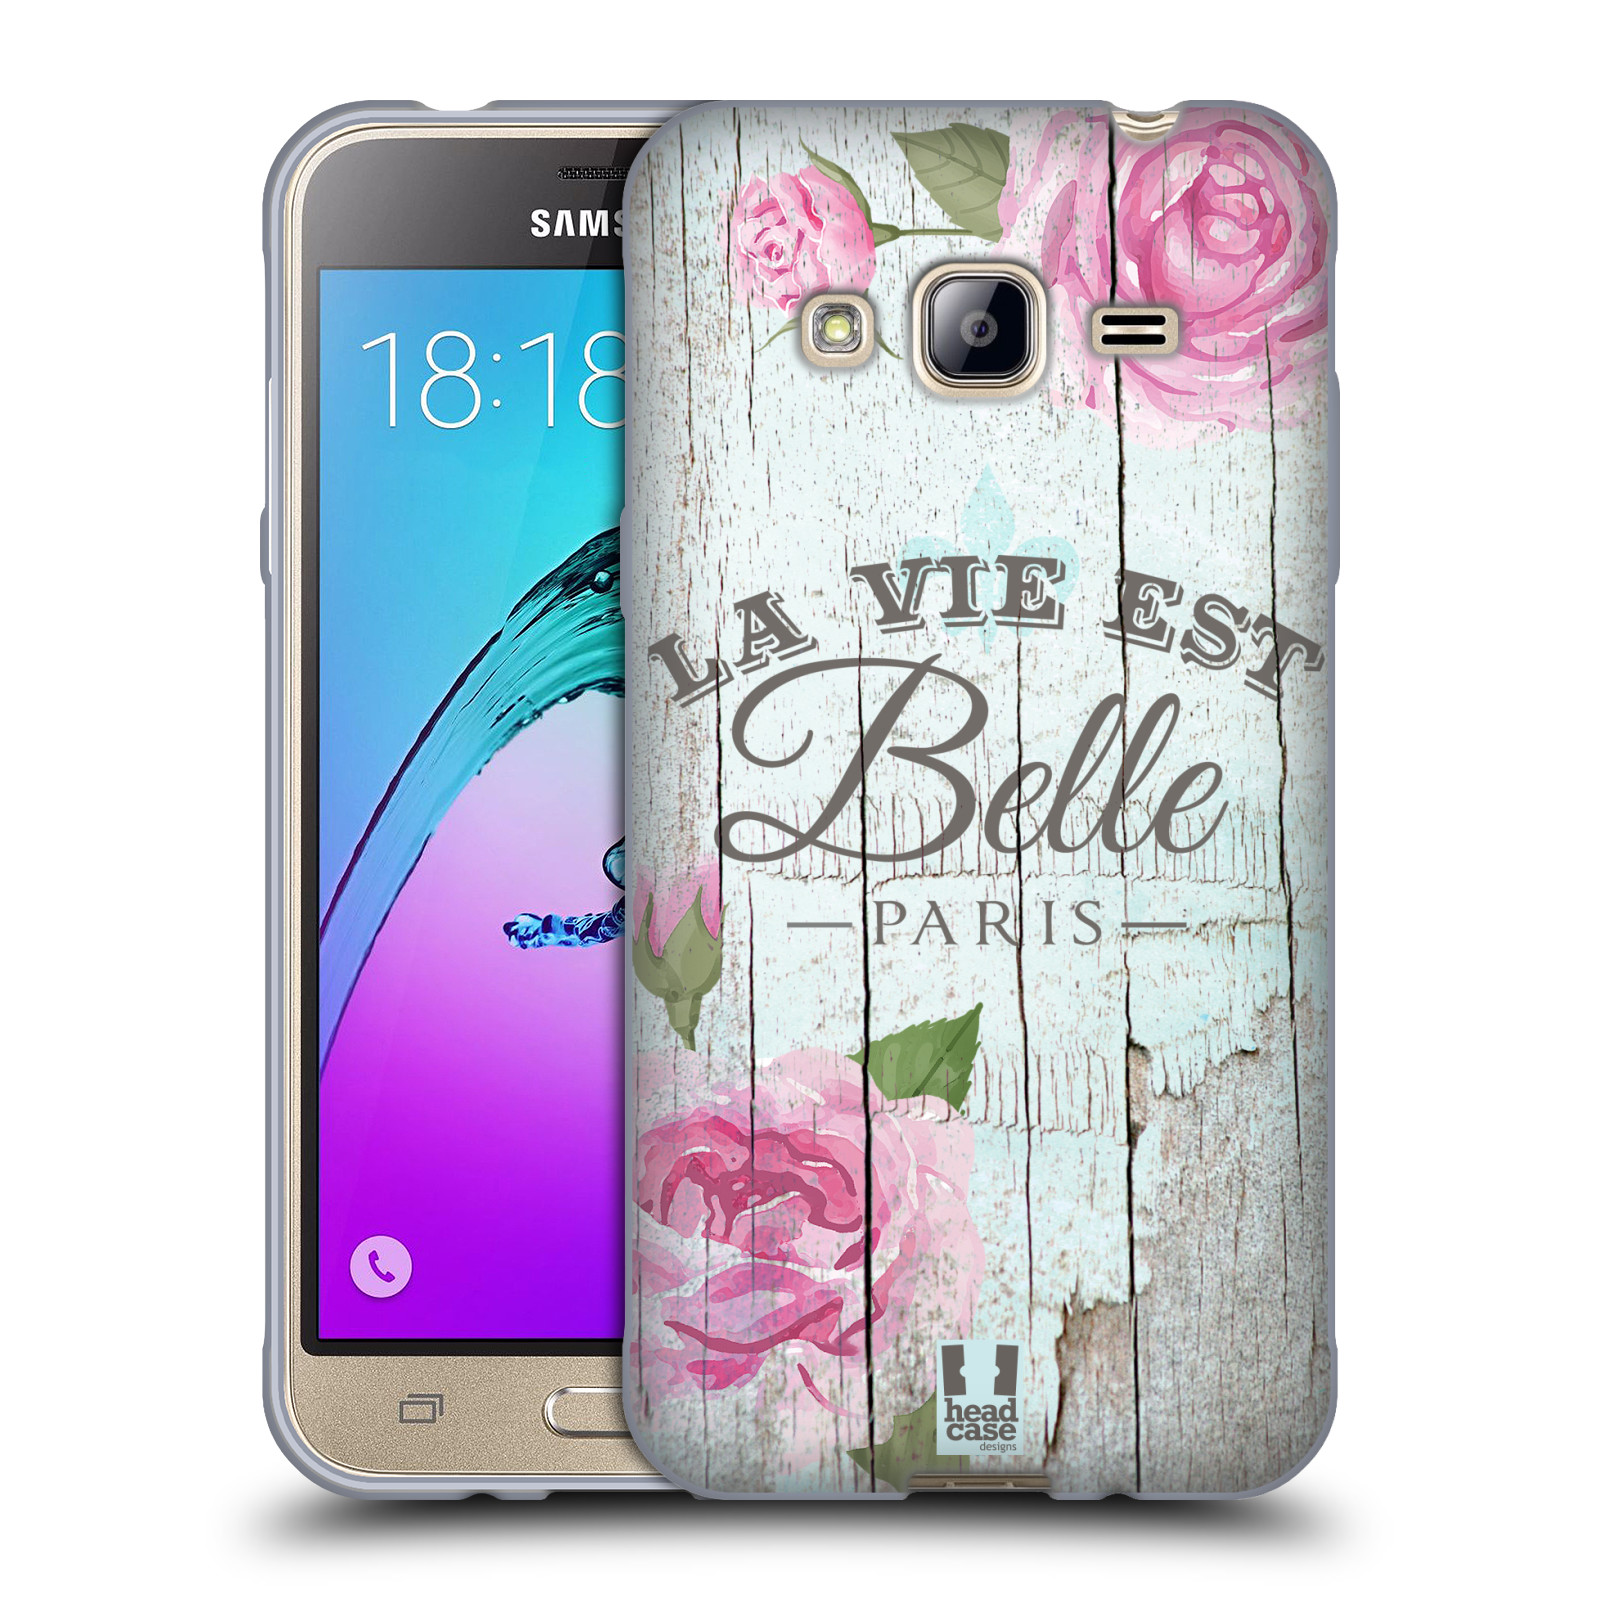 HEAD CASE silikonový obal na mobil Samsung Galaxy J3, J3 2016 vzor Barevný venkov, vintage RŮŽE, ŘŮŽOVÁ